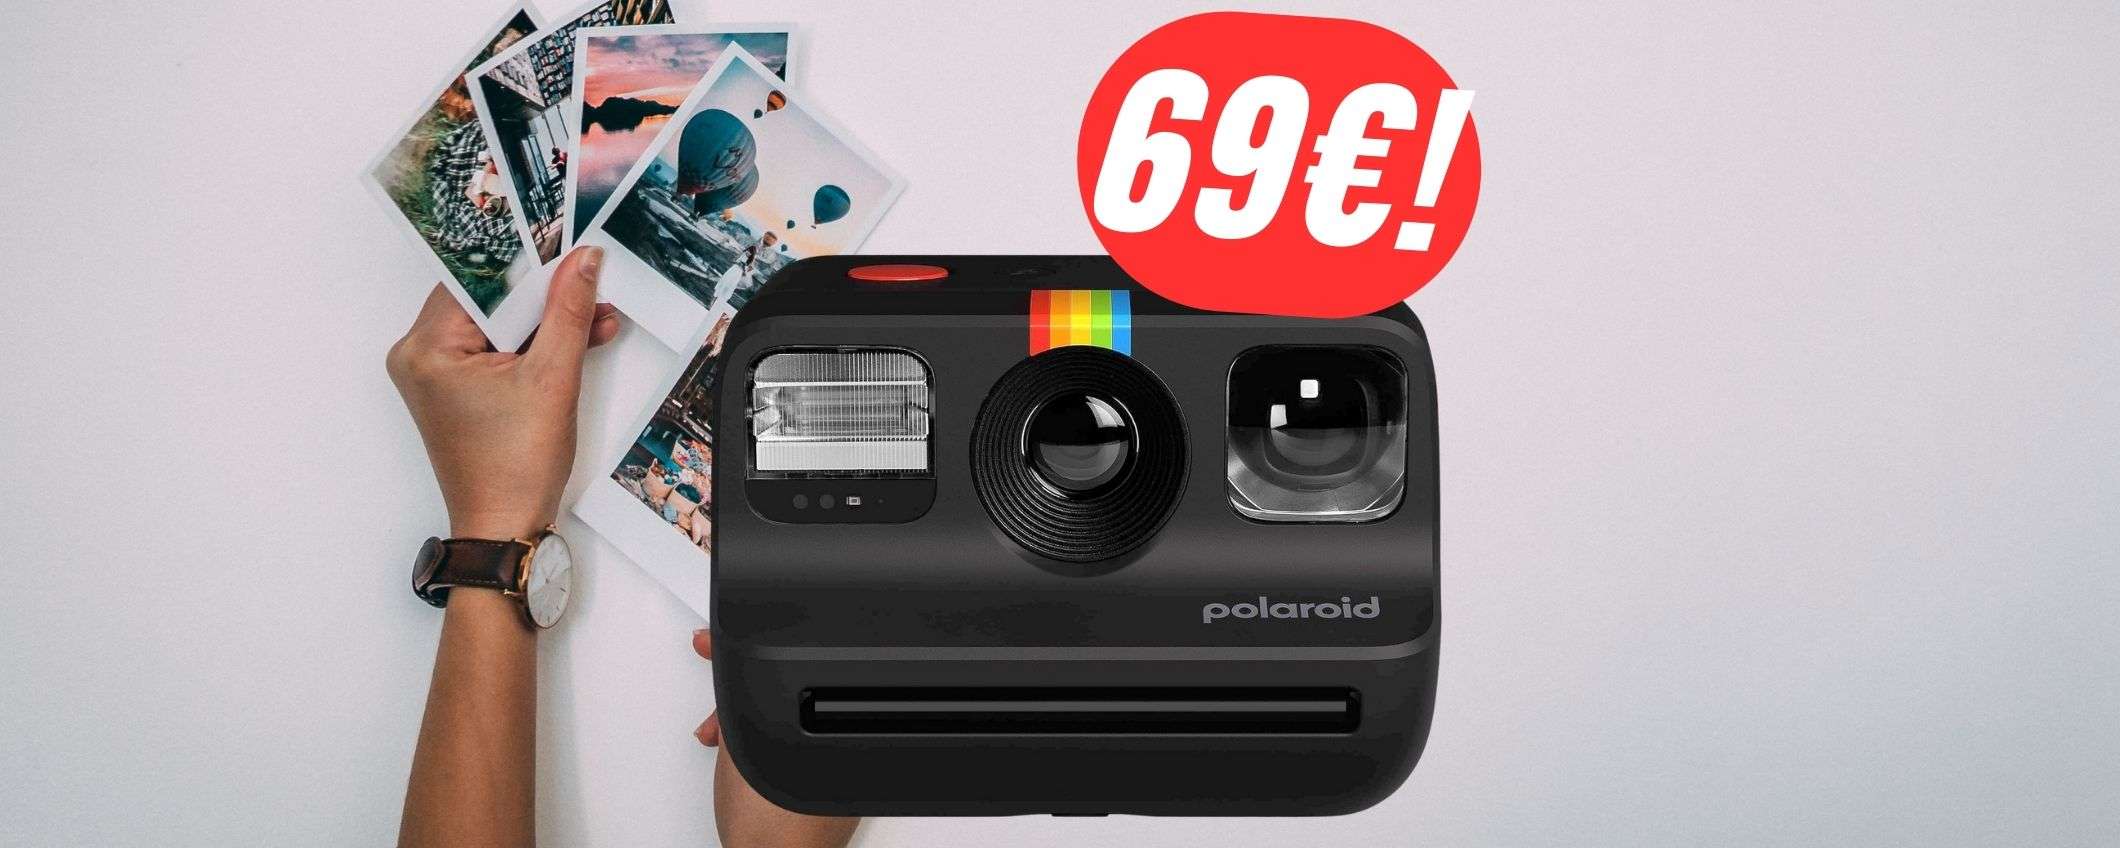 MINIMO STORICO per questa Polaroid a 69€ su Amazon!